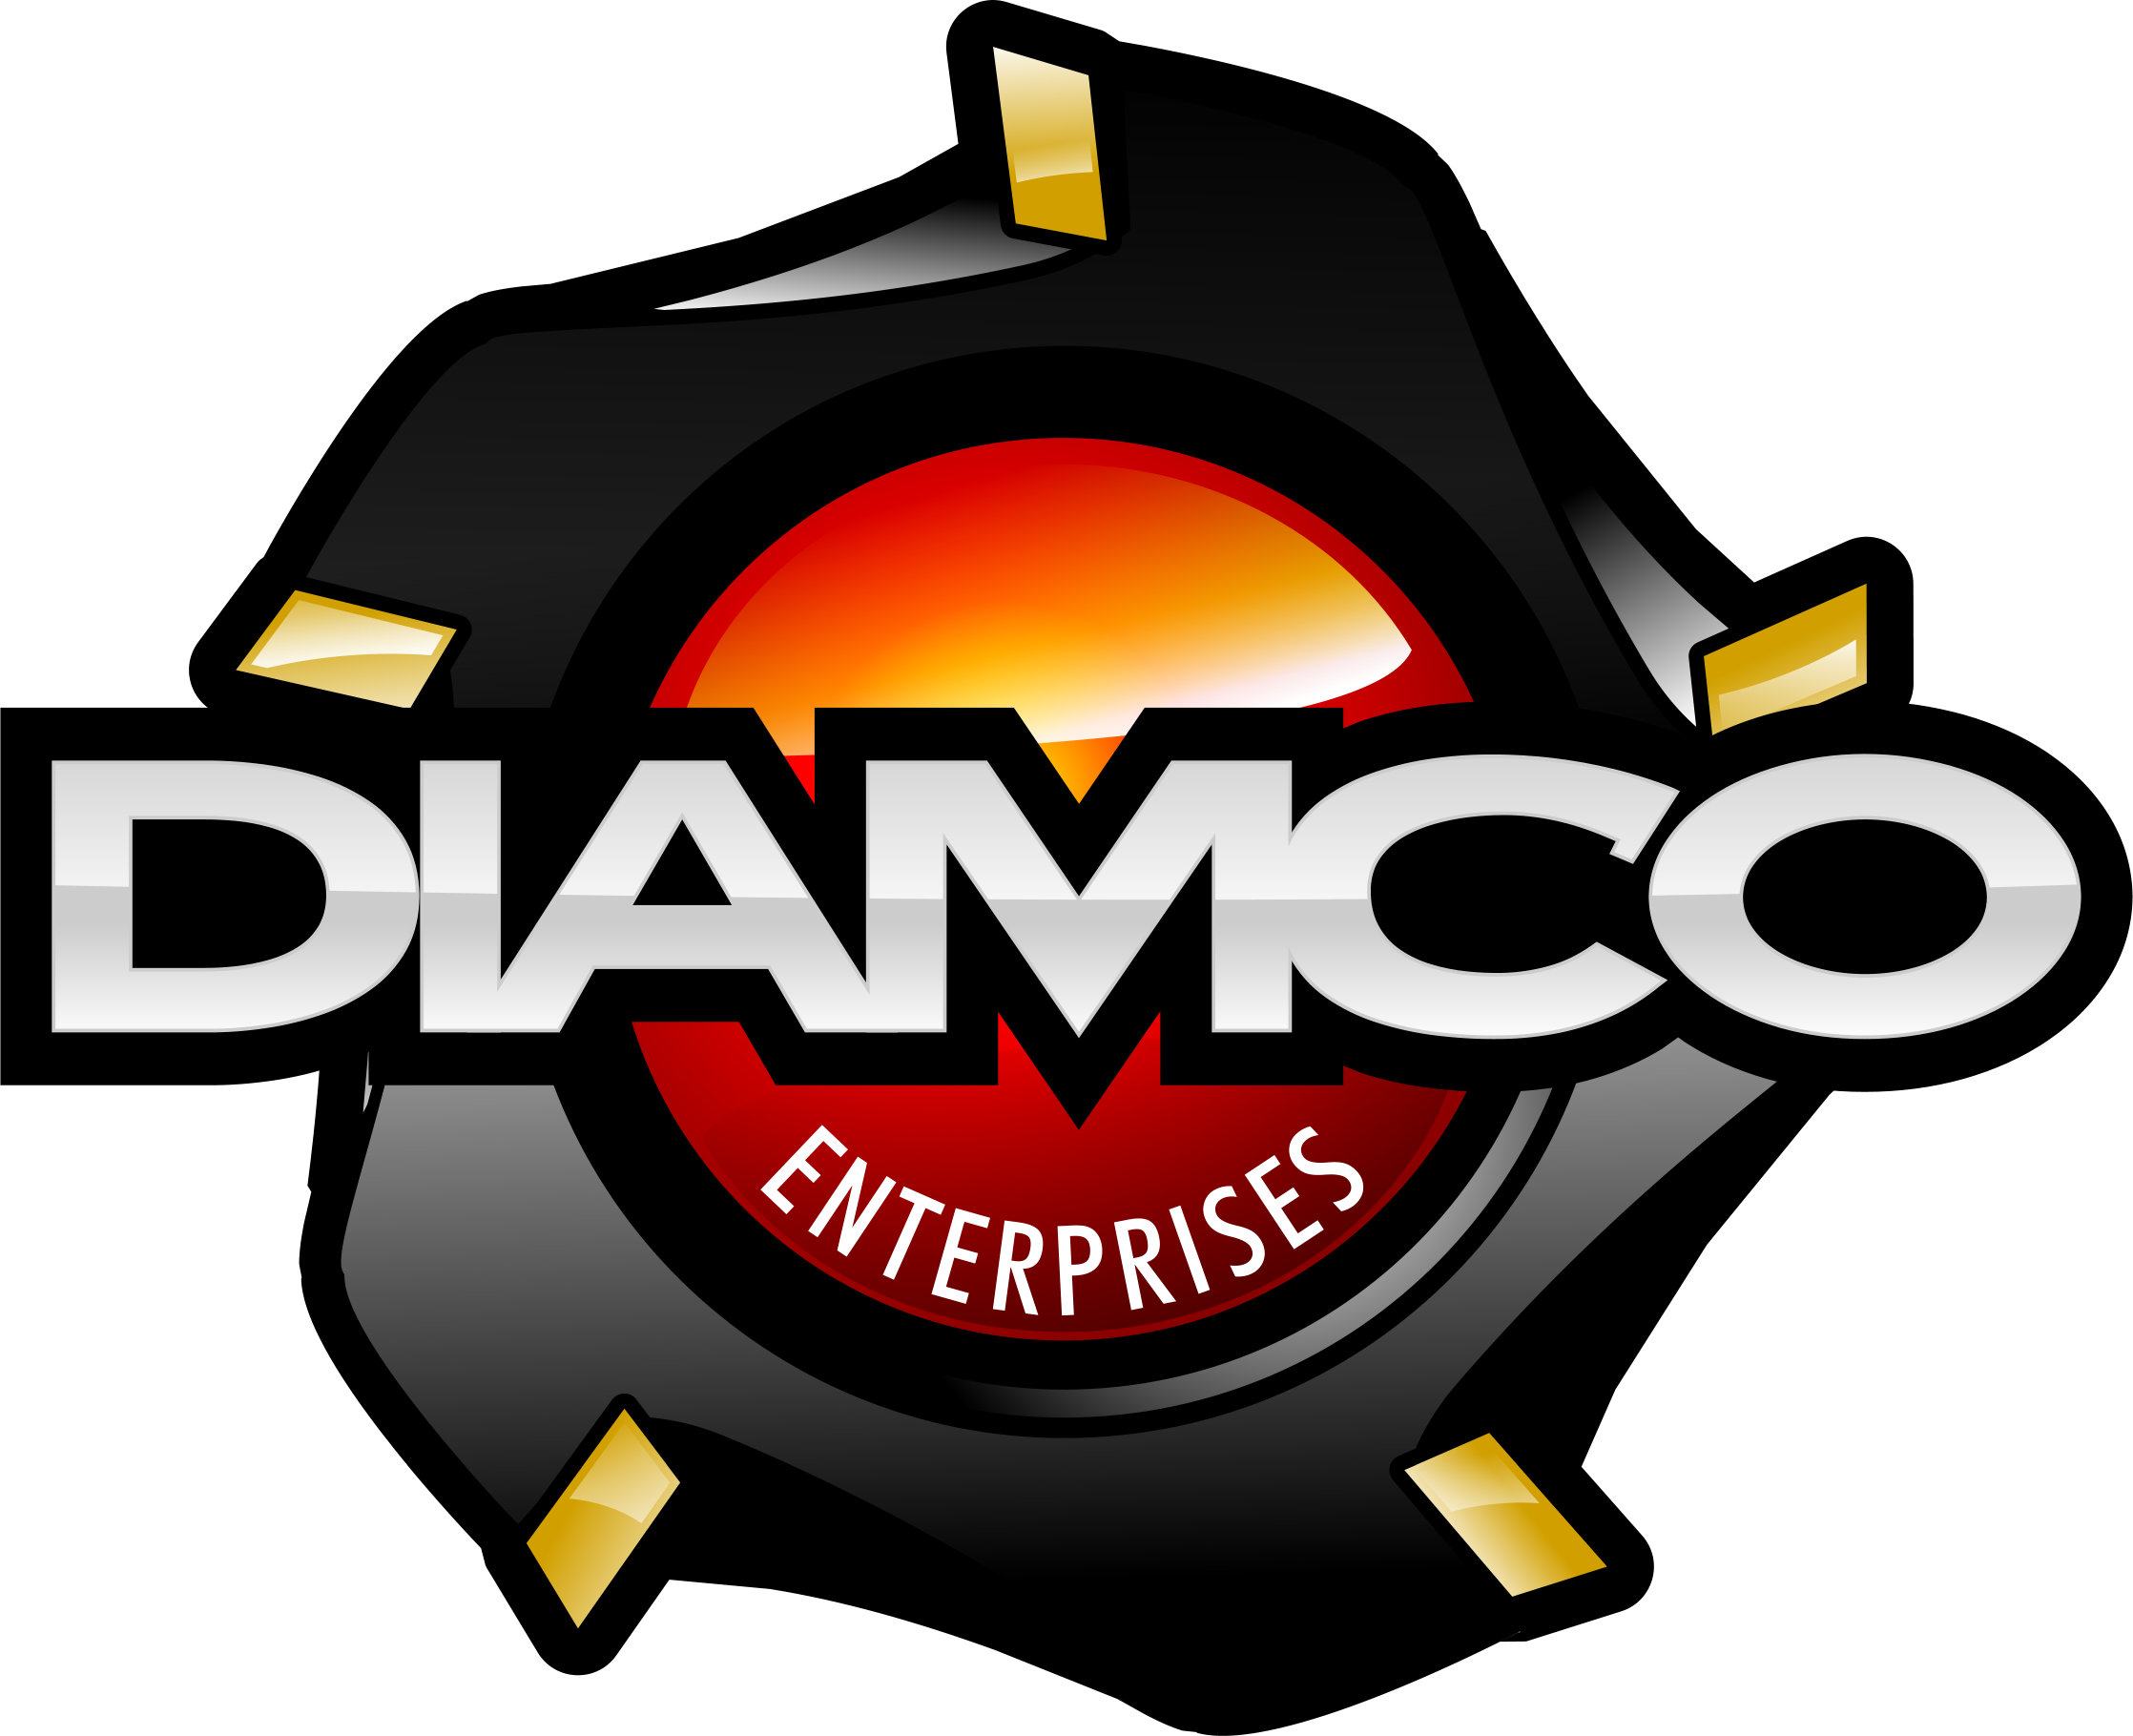 Diamco Enterprises Ltd.